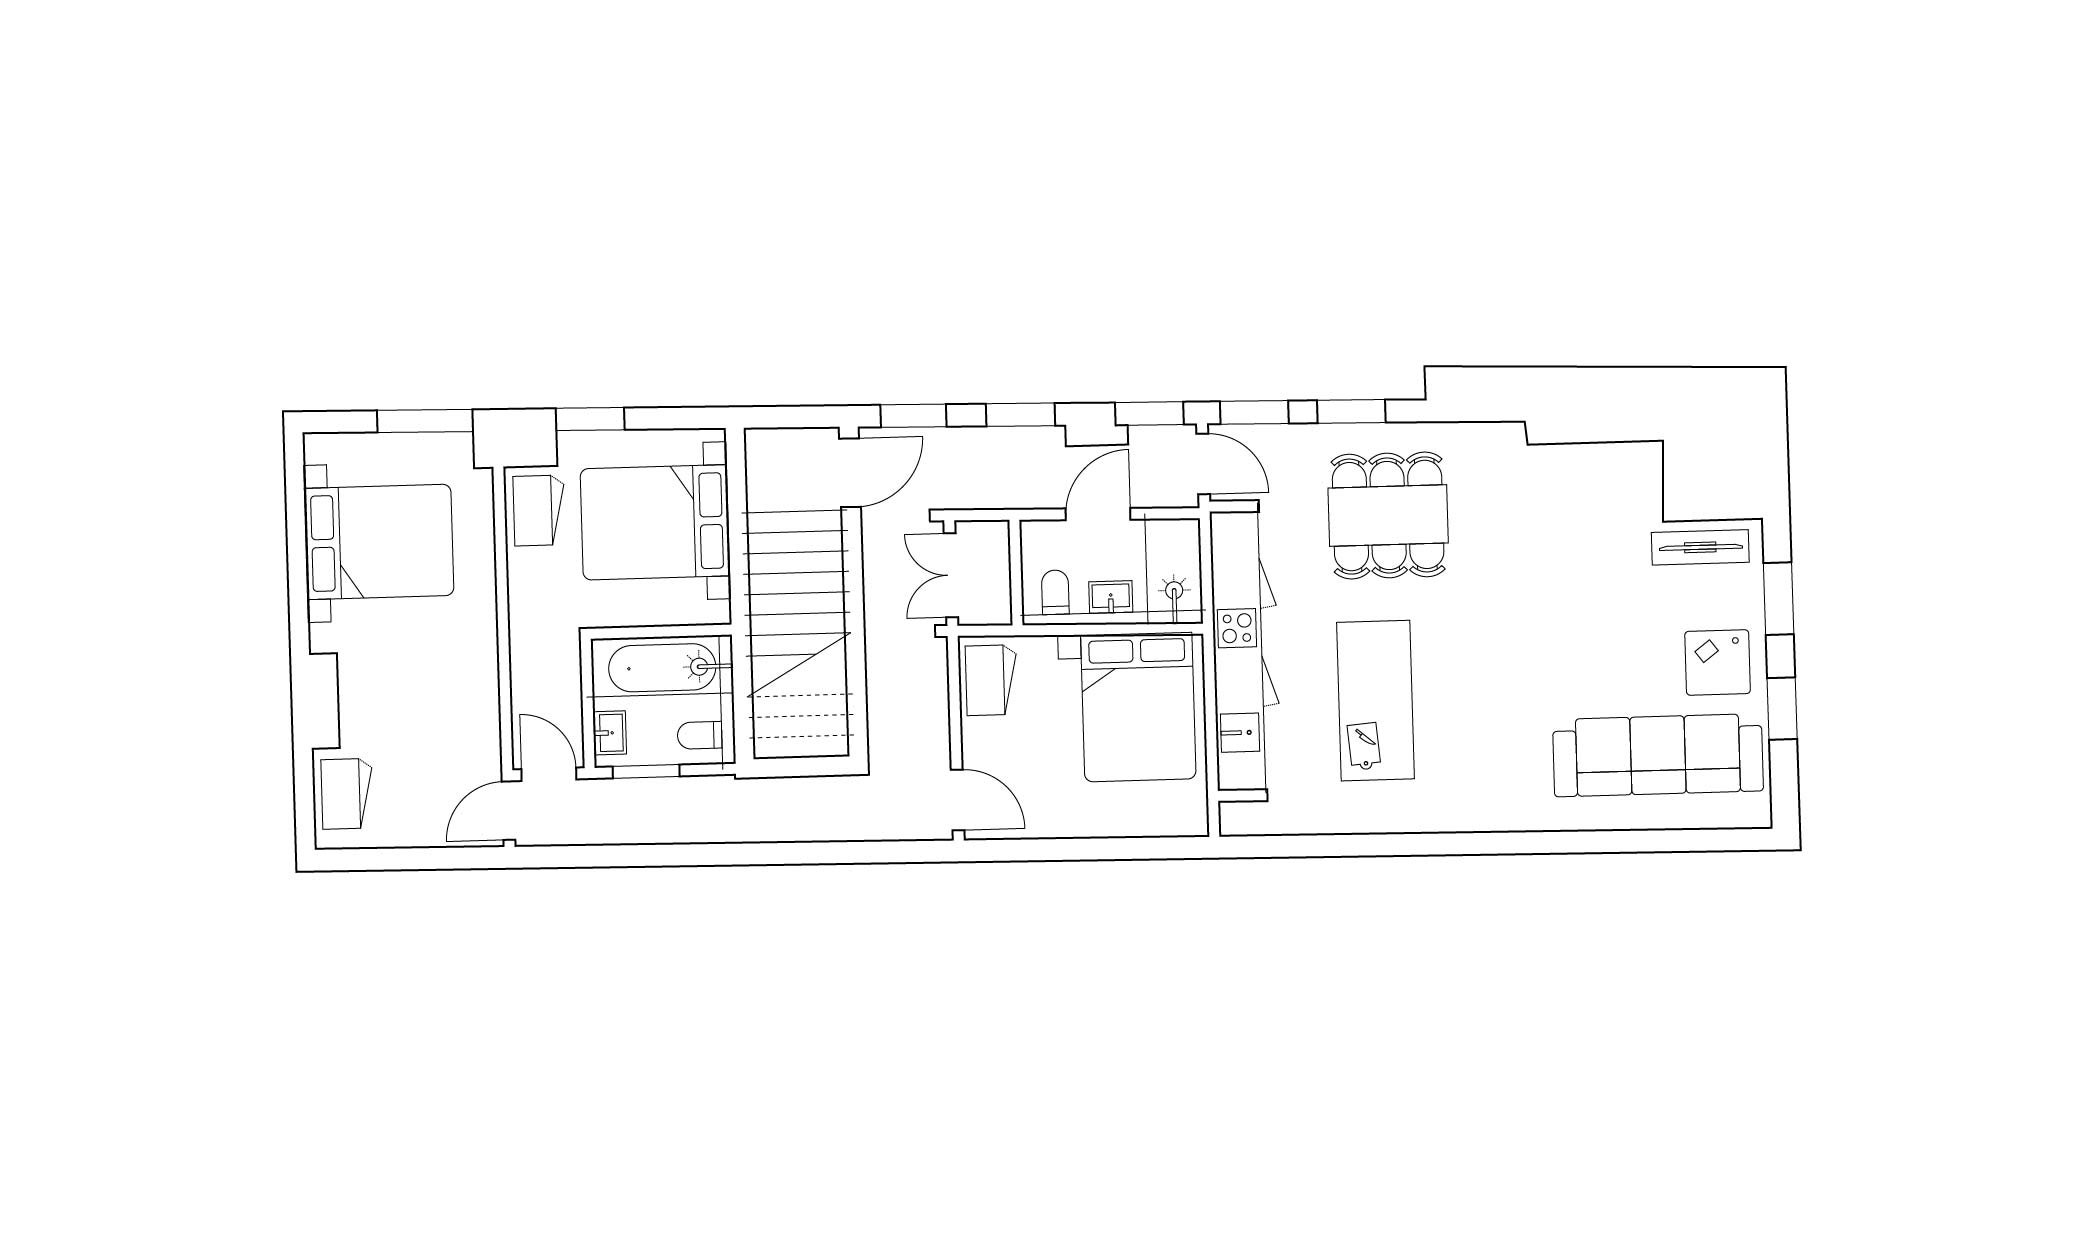 website - 3bed - floorplan examples-01.jpg